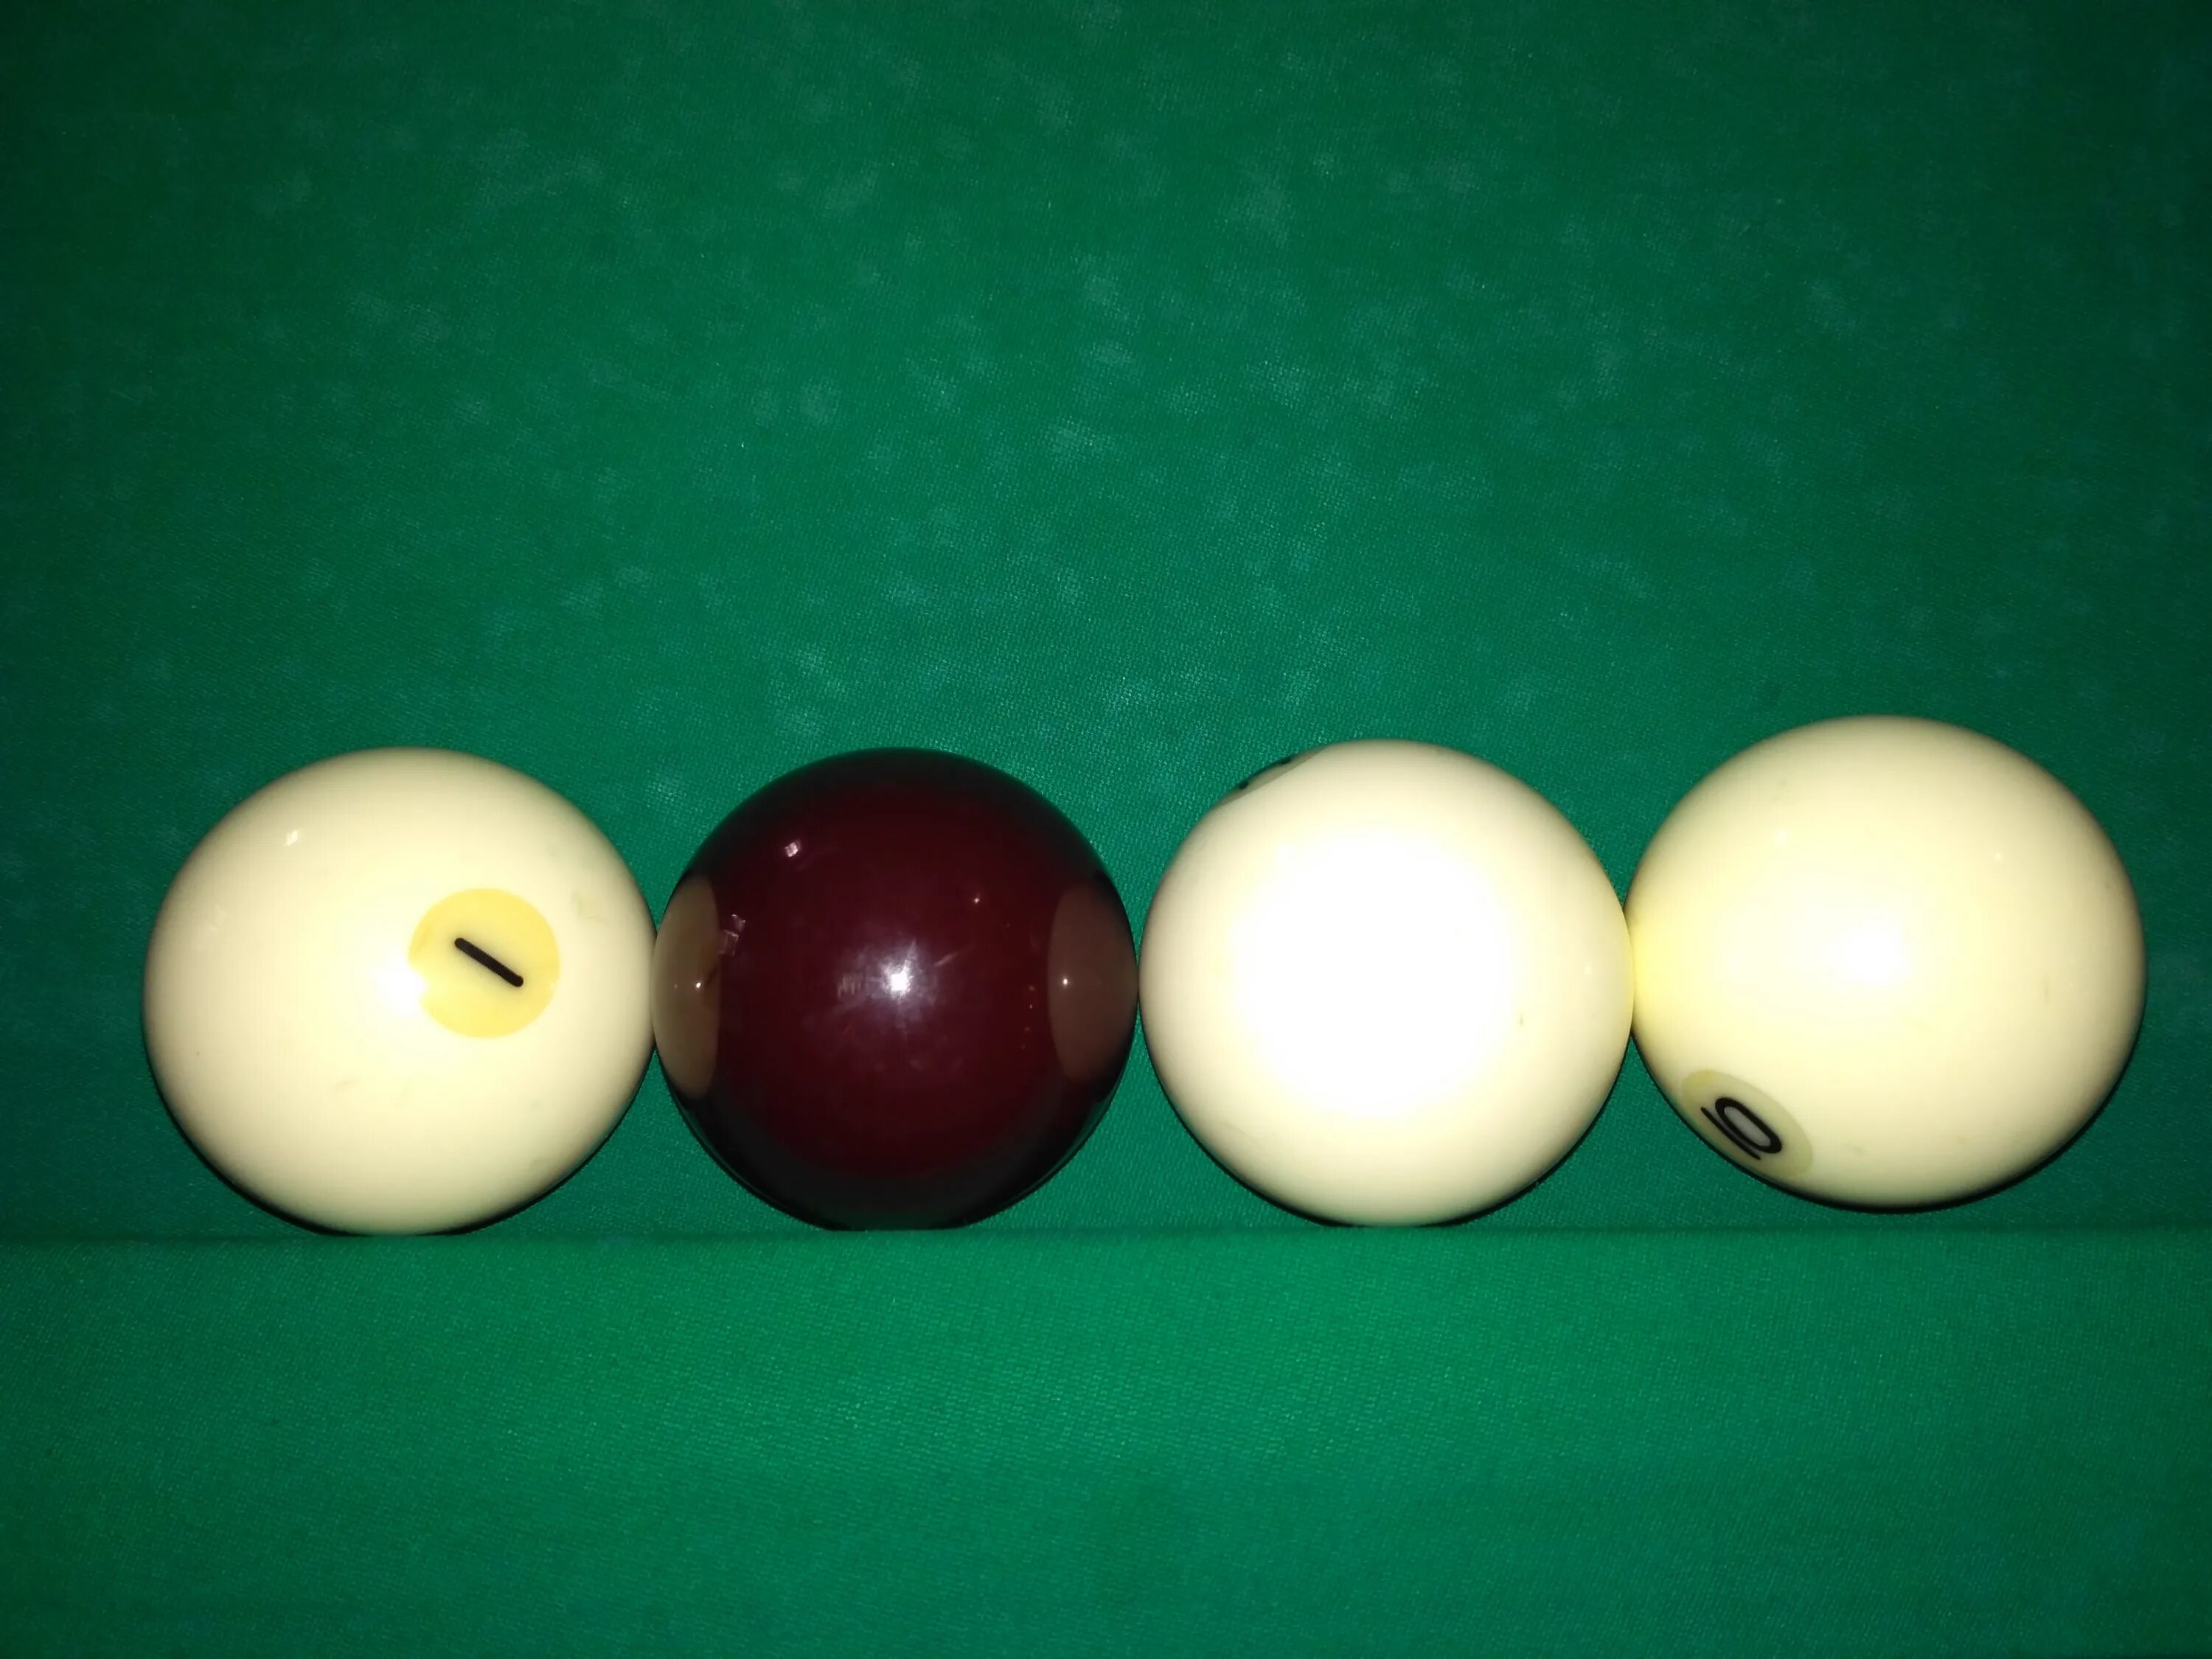 Как называются шары в бильярде. Шары бильярдные 68 мм.(цветные) Pool "Knight shot" ks4200-68. Цветные шары для русского бильярда. Тренировочные шары для русского бильярда. Шары для пула.